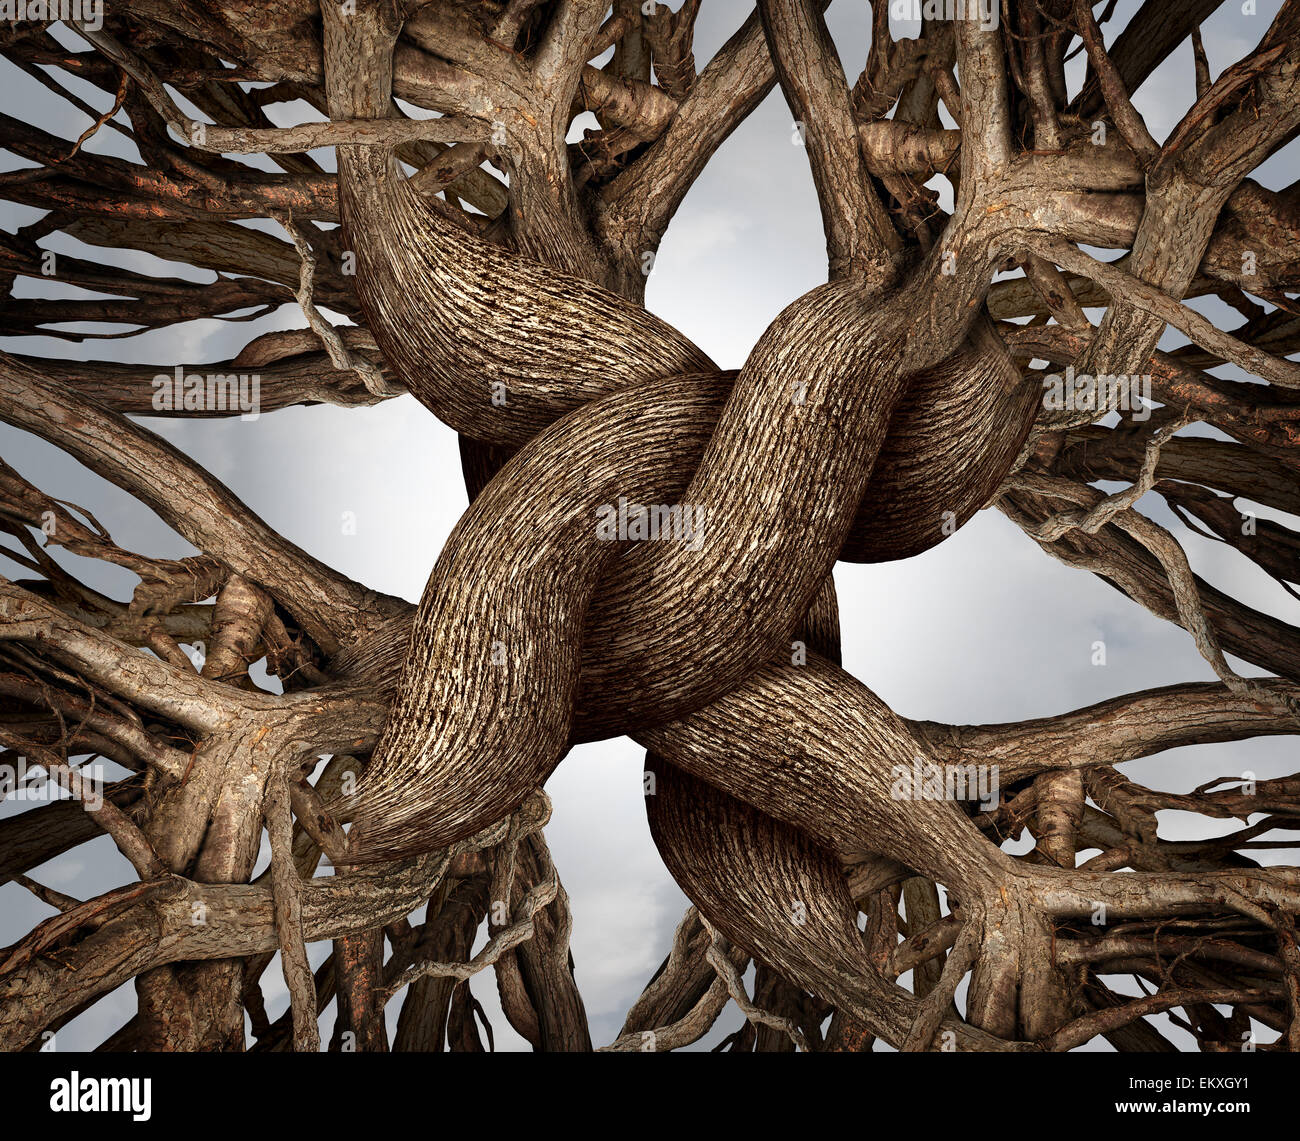 Einheit-Symbol als ein ewiger Knoten des Vertrauens gemacht aus den Wurzeln und Stämmen der Bäume wachsen als Gemeinschaft oder geschäftliche Freundschaft Konzept für die Kraft der Zusammenarbeit und Solidarität arbeiten zusammen für soliden Erfolg und Wachstum. Stockfoto